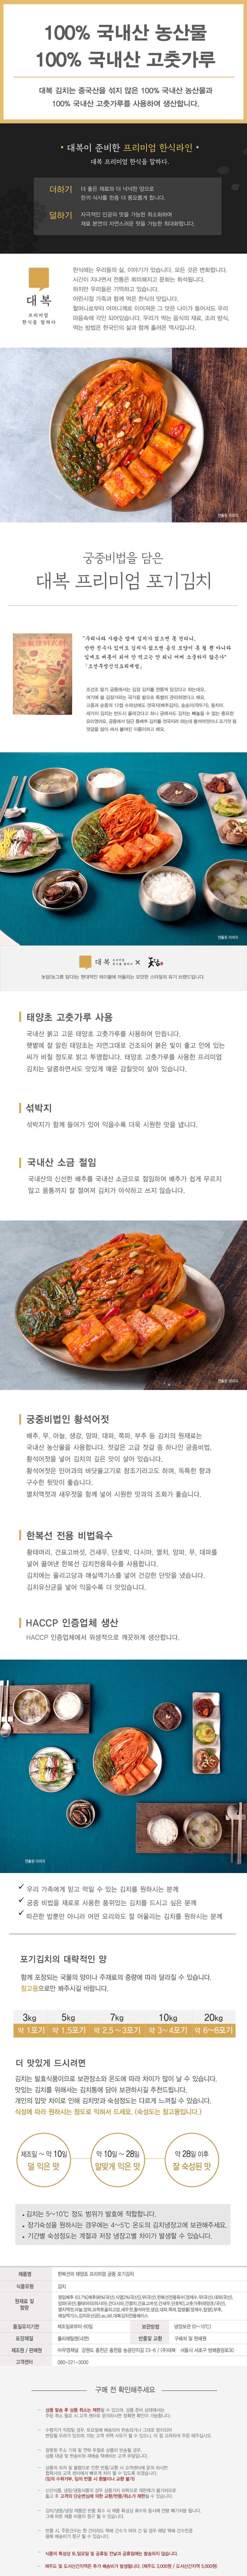 kimchi(pp).jpg